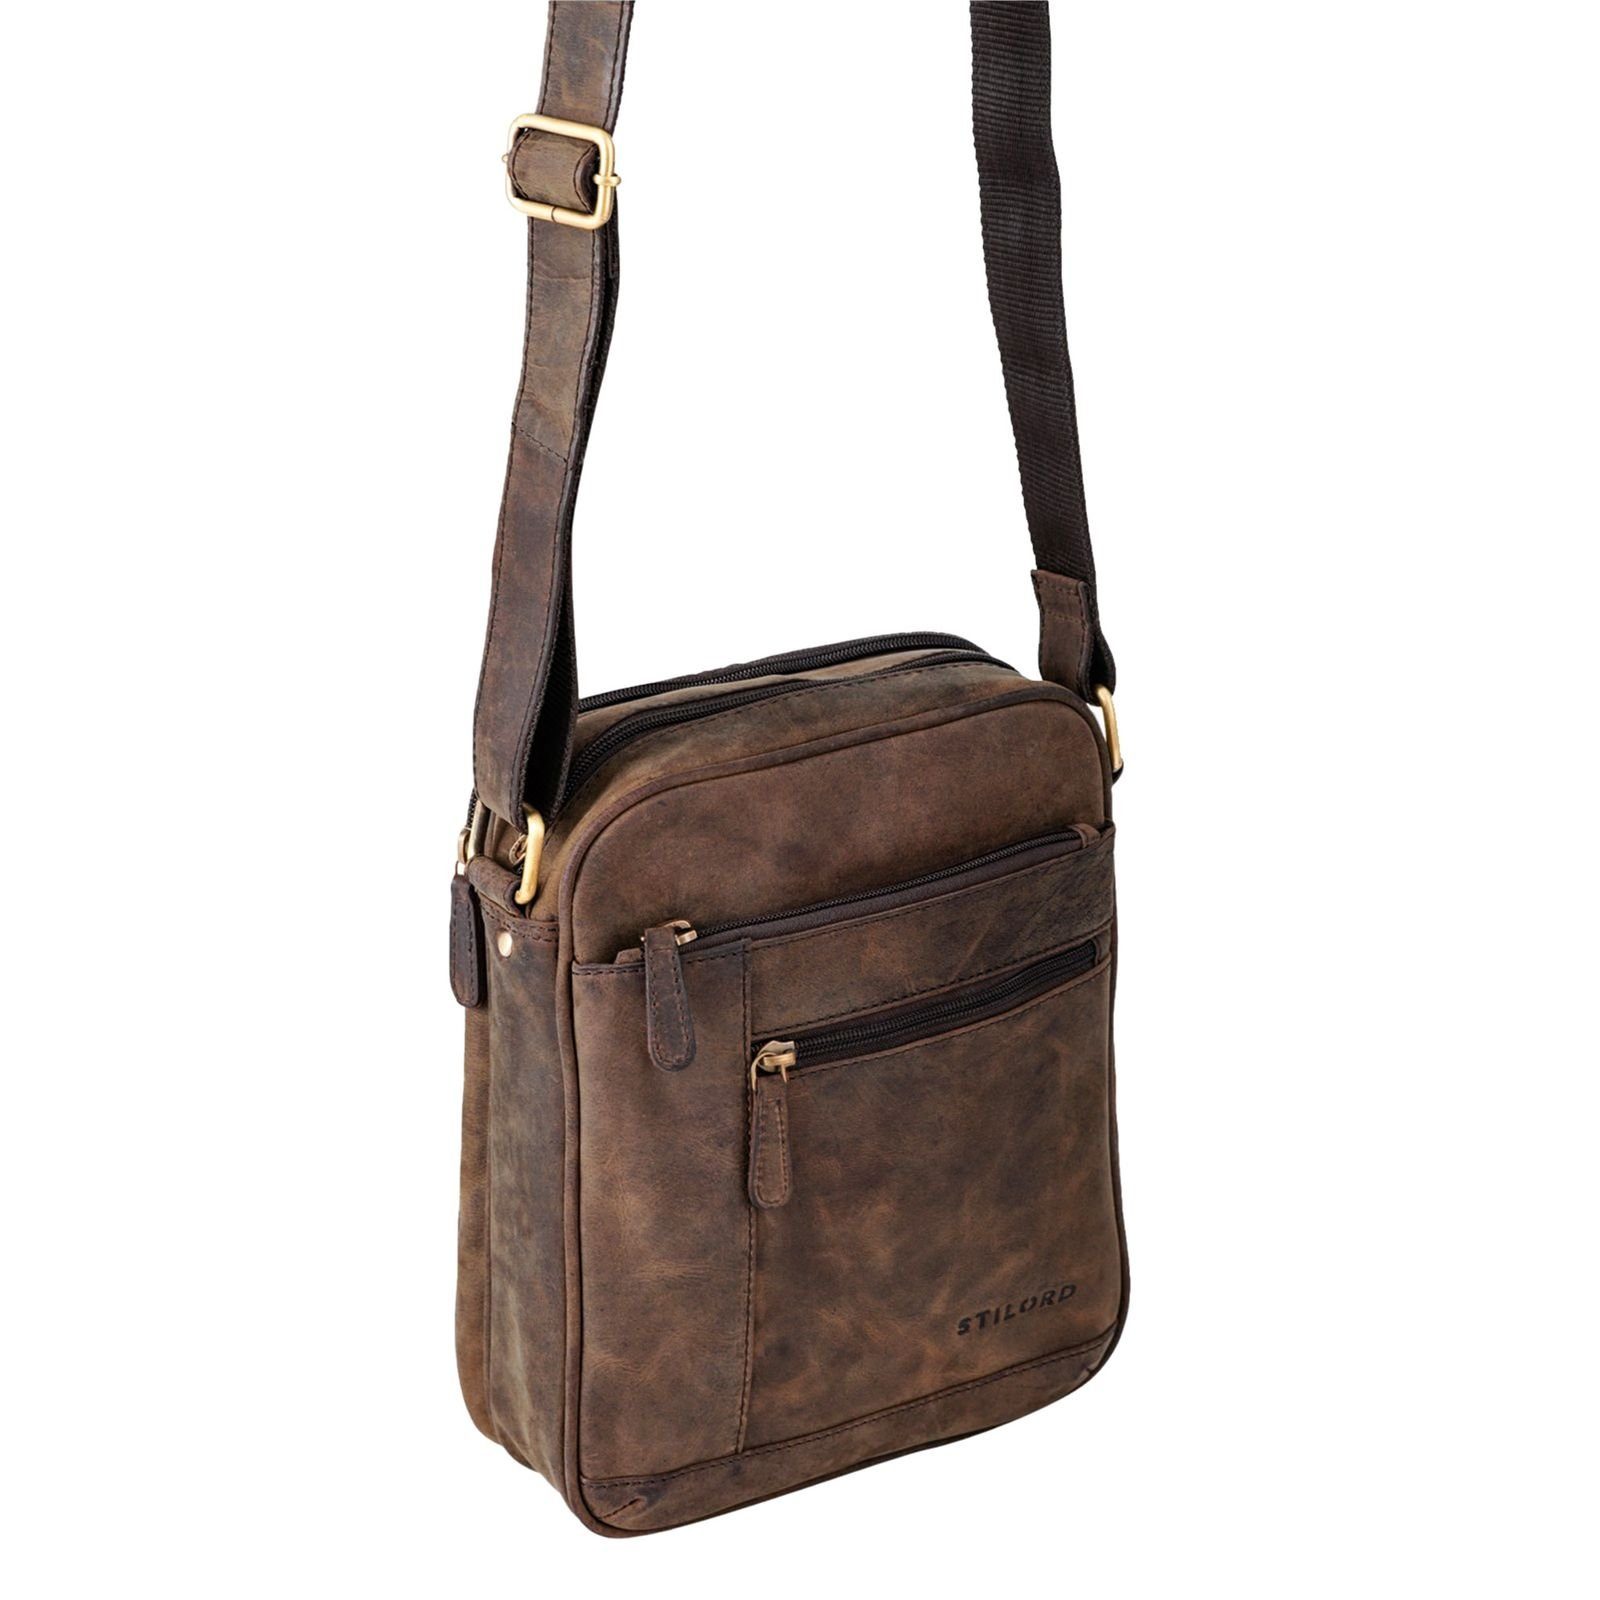 "Diego" Vintage - Herrentasche Leder braun klein STILORD Messenger Bag zamora